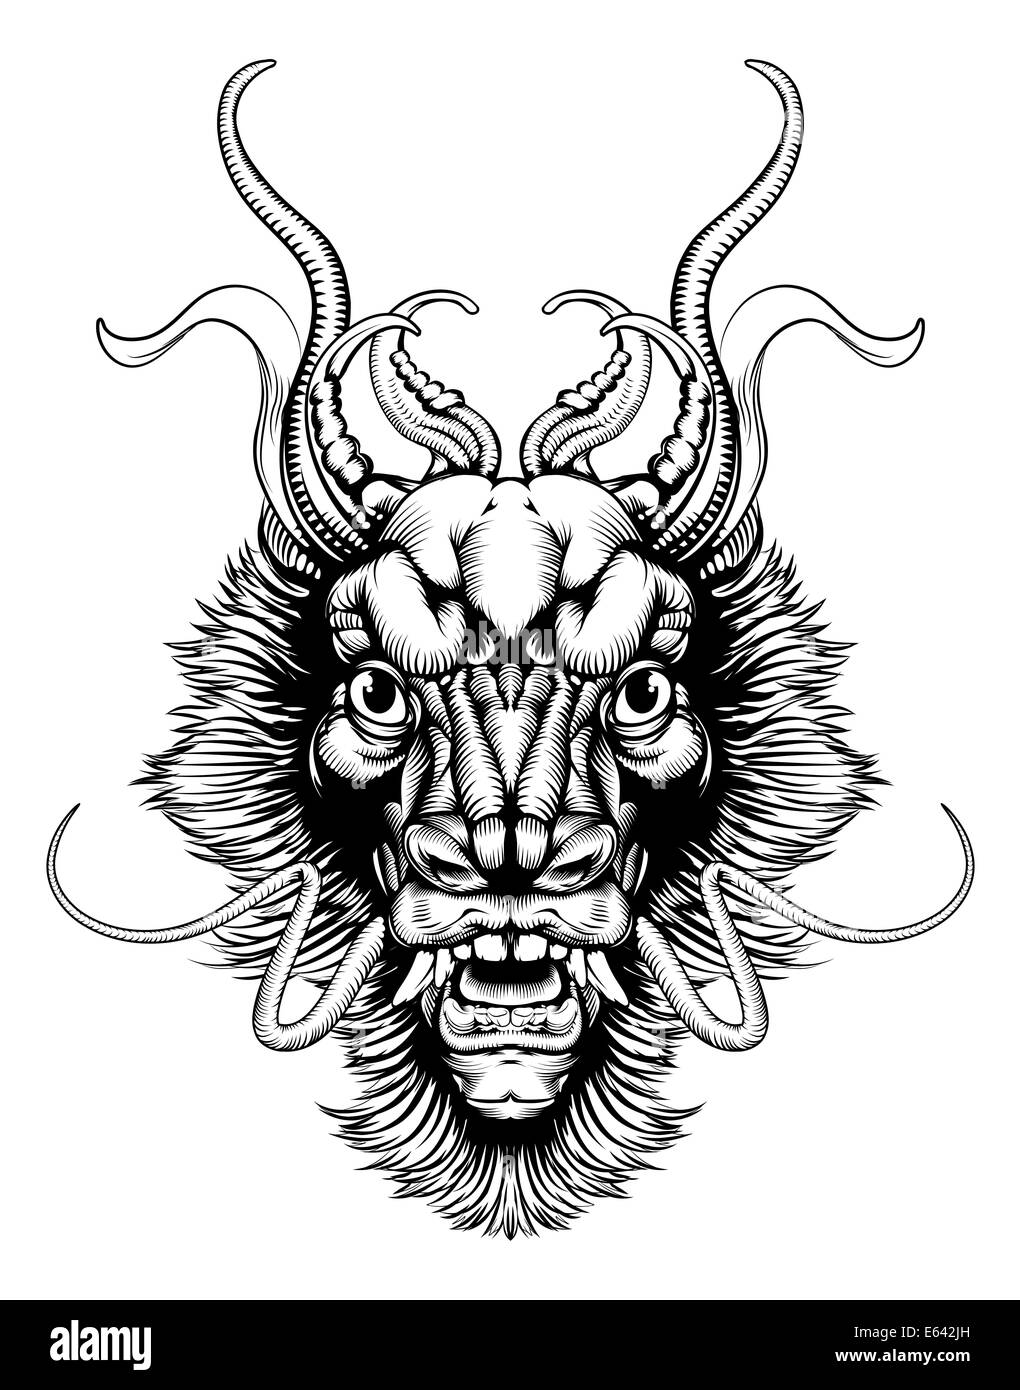 Une illustration originale d'une tête de dragon dans un style vintage sur bois Banque D'Images